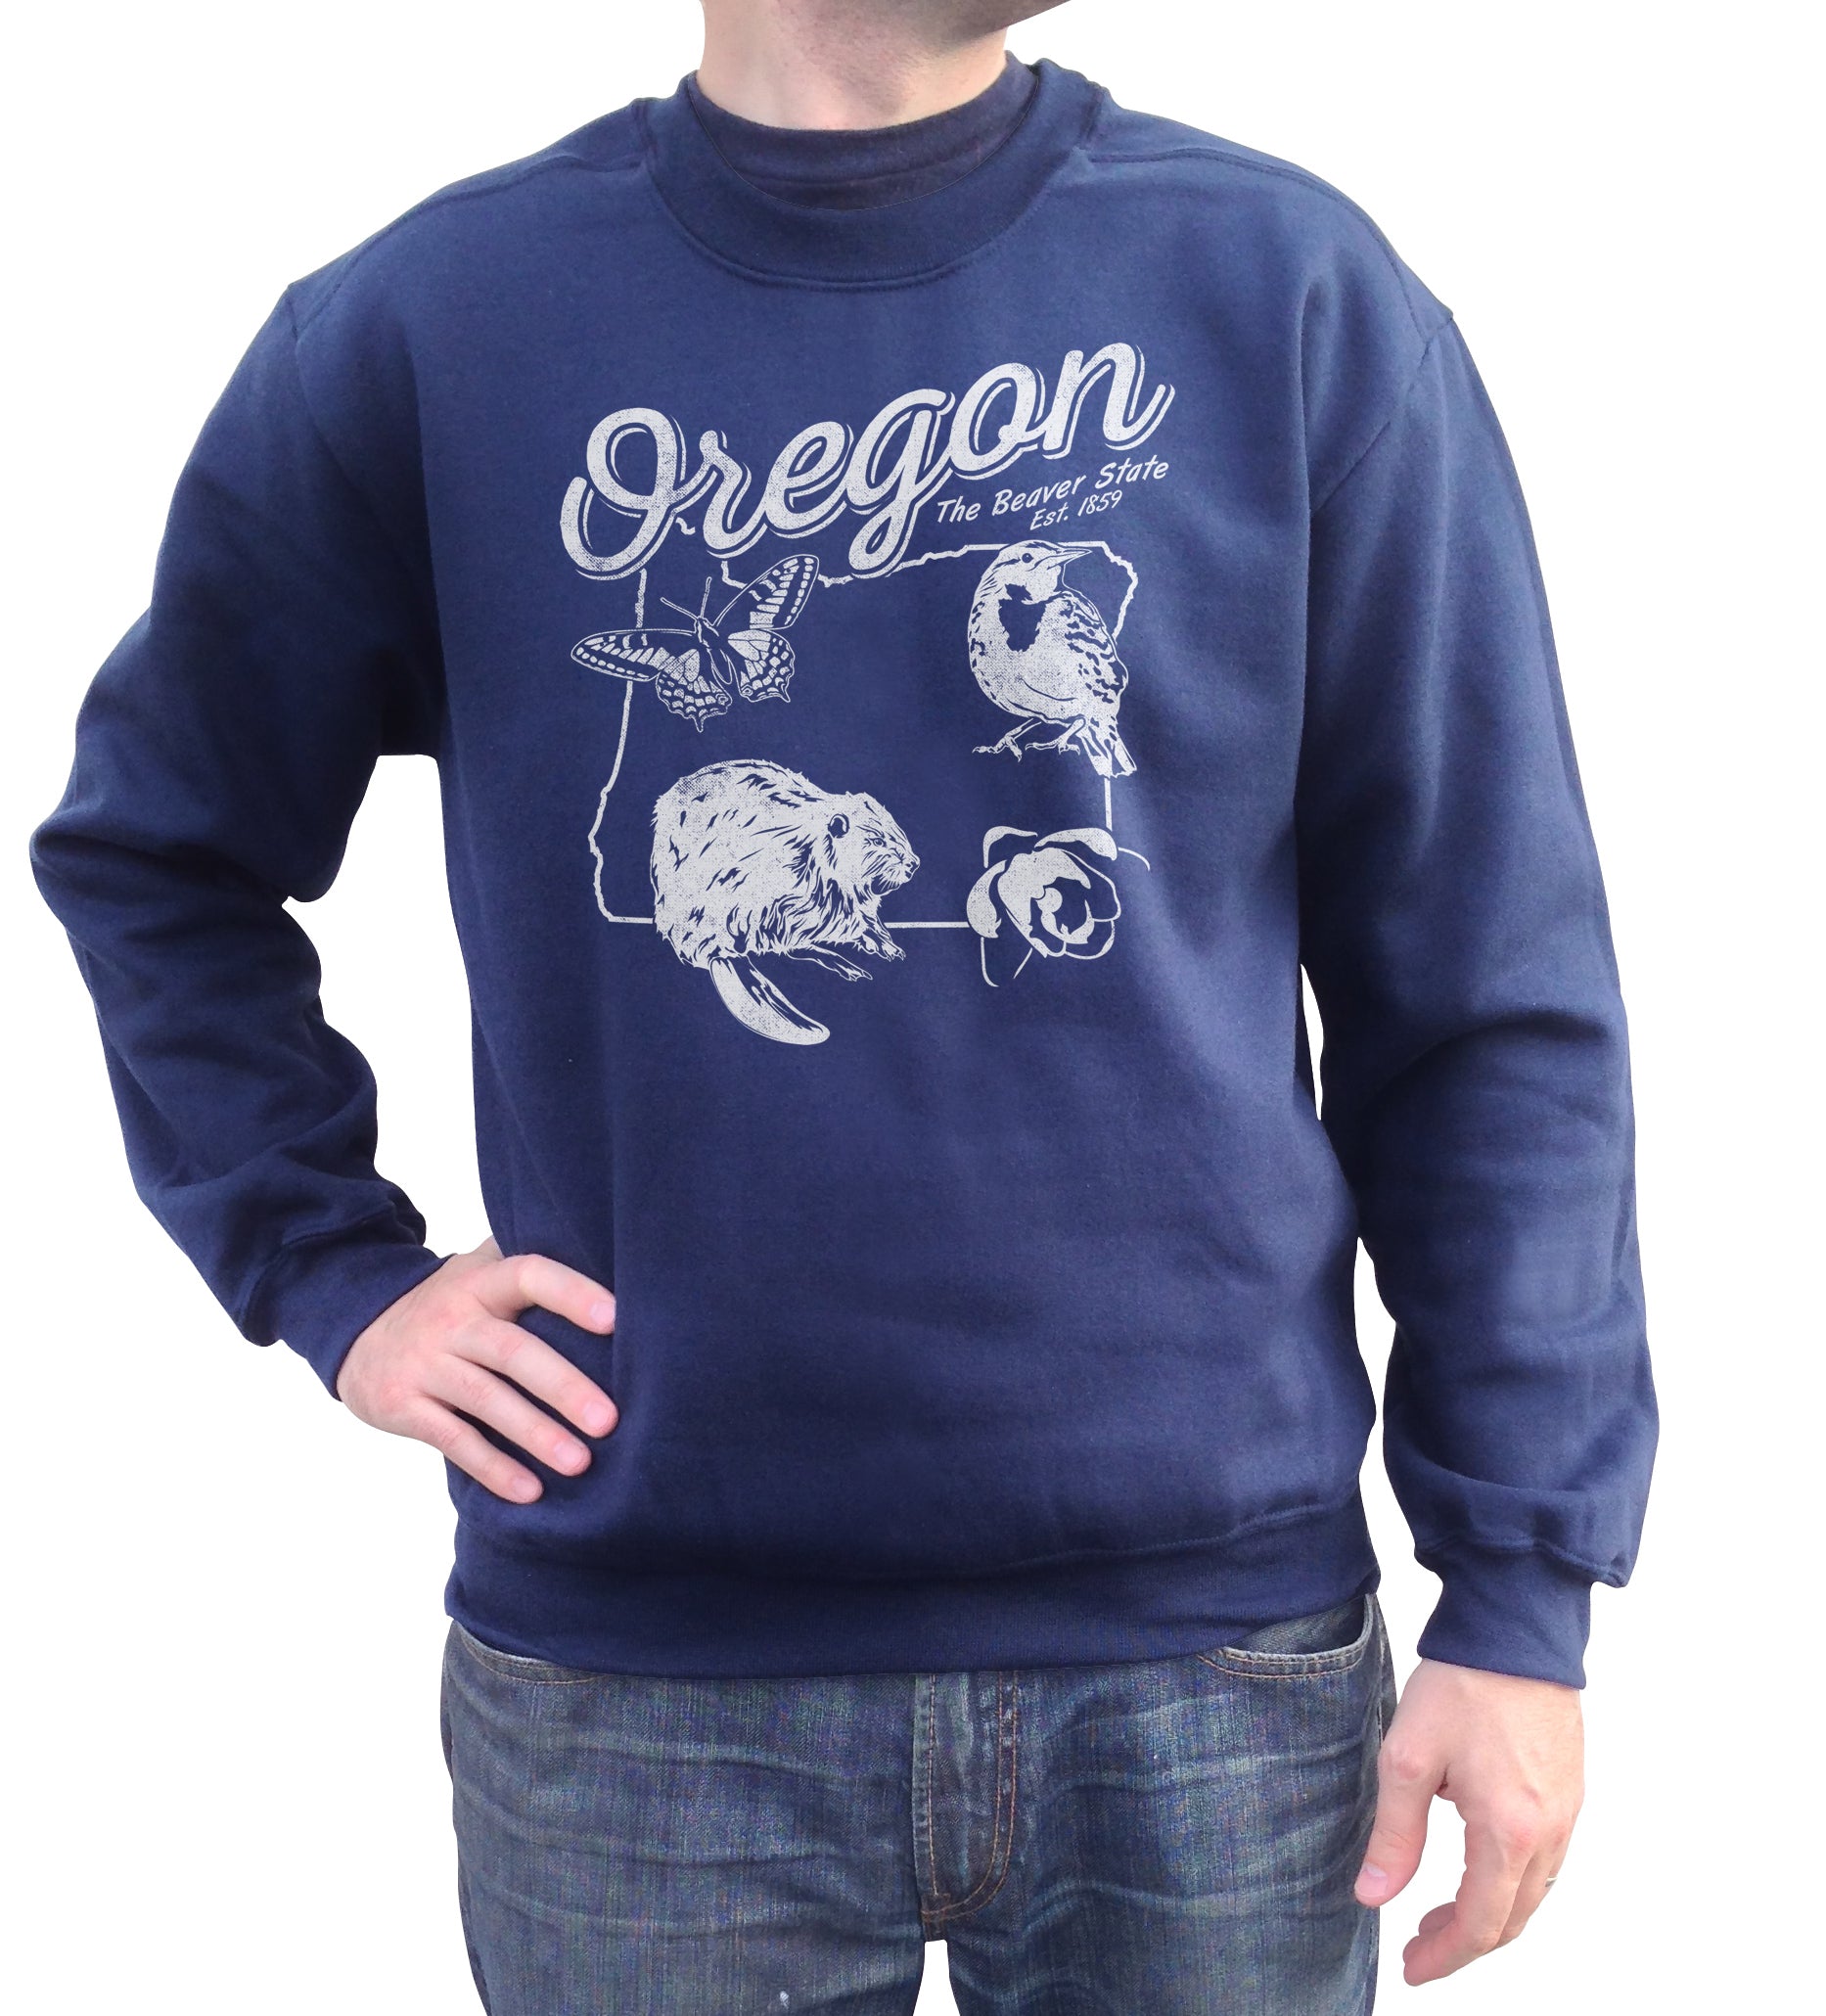 Unisex Vintage Oregon Sweatshirt